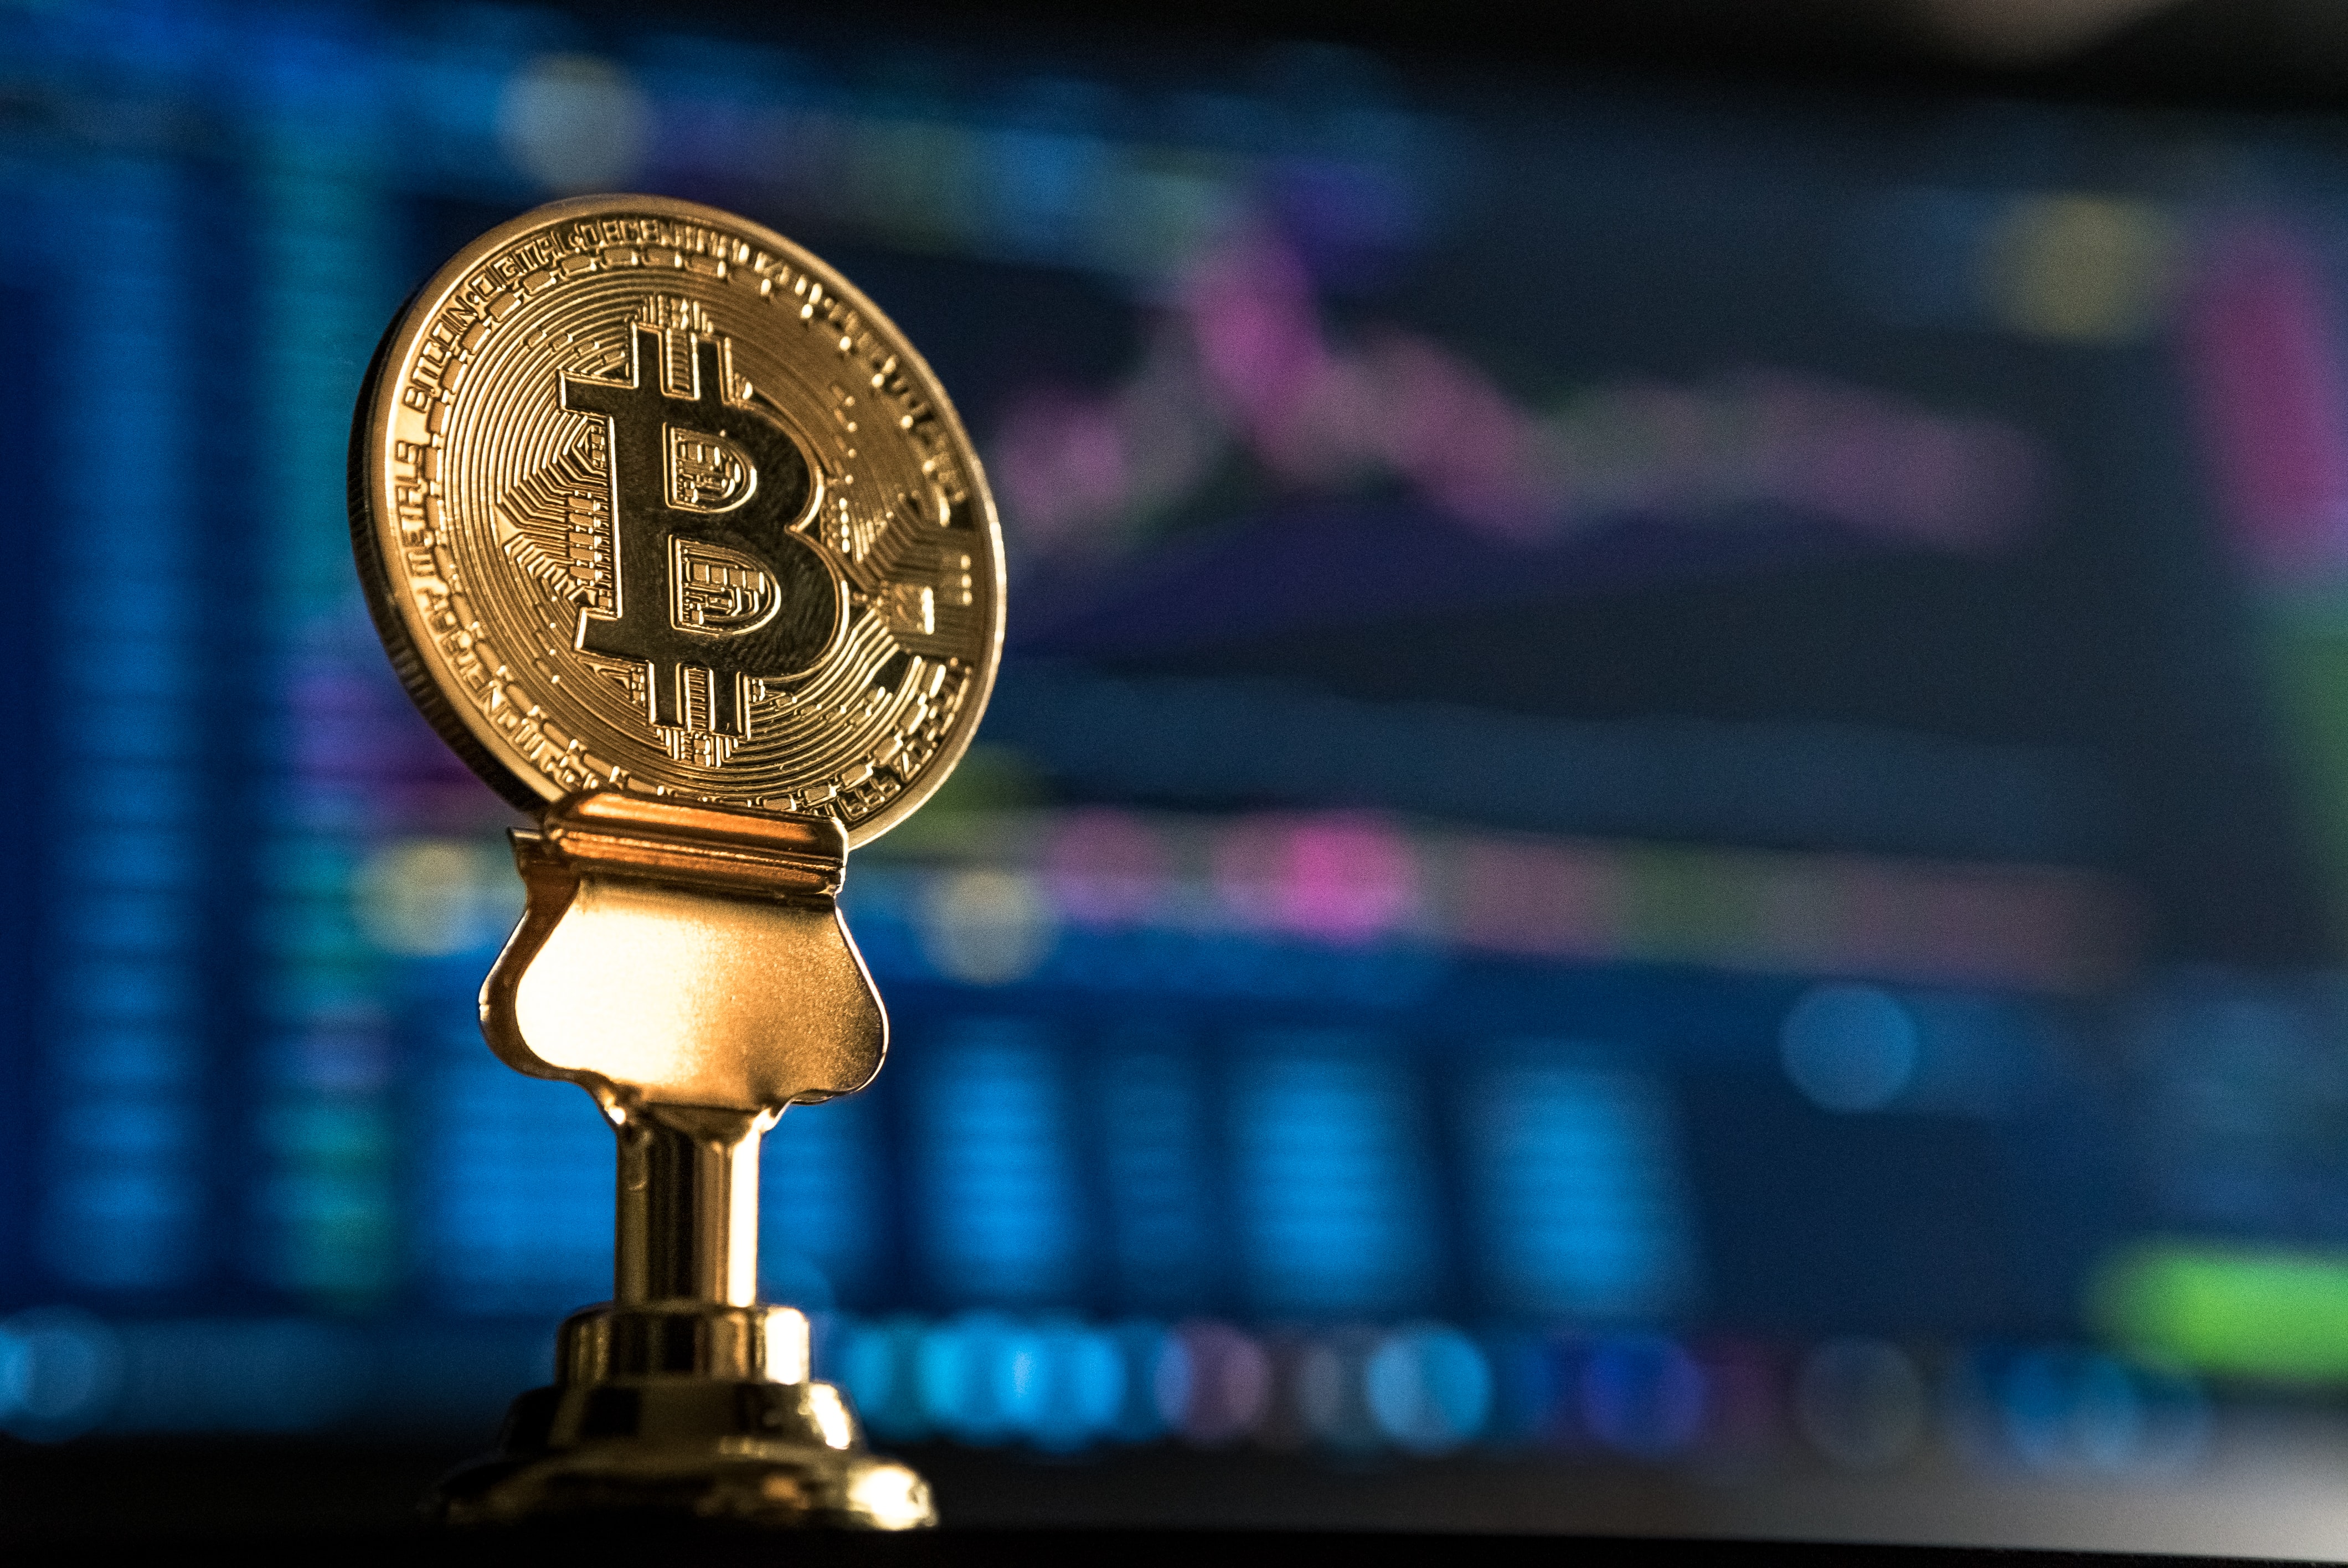 Criptos hoje: Bitcoin ronda os US$ 20 mil enquanto analistas alertam para mais baixas; NFTs impulsionam Polygon e Sandbox